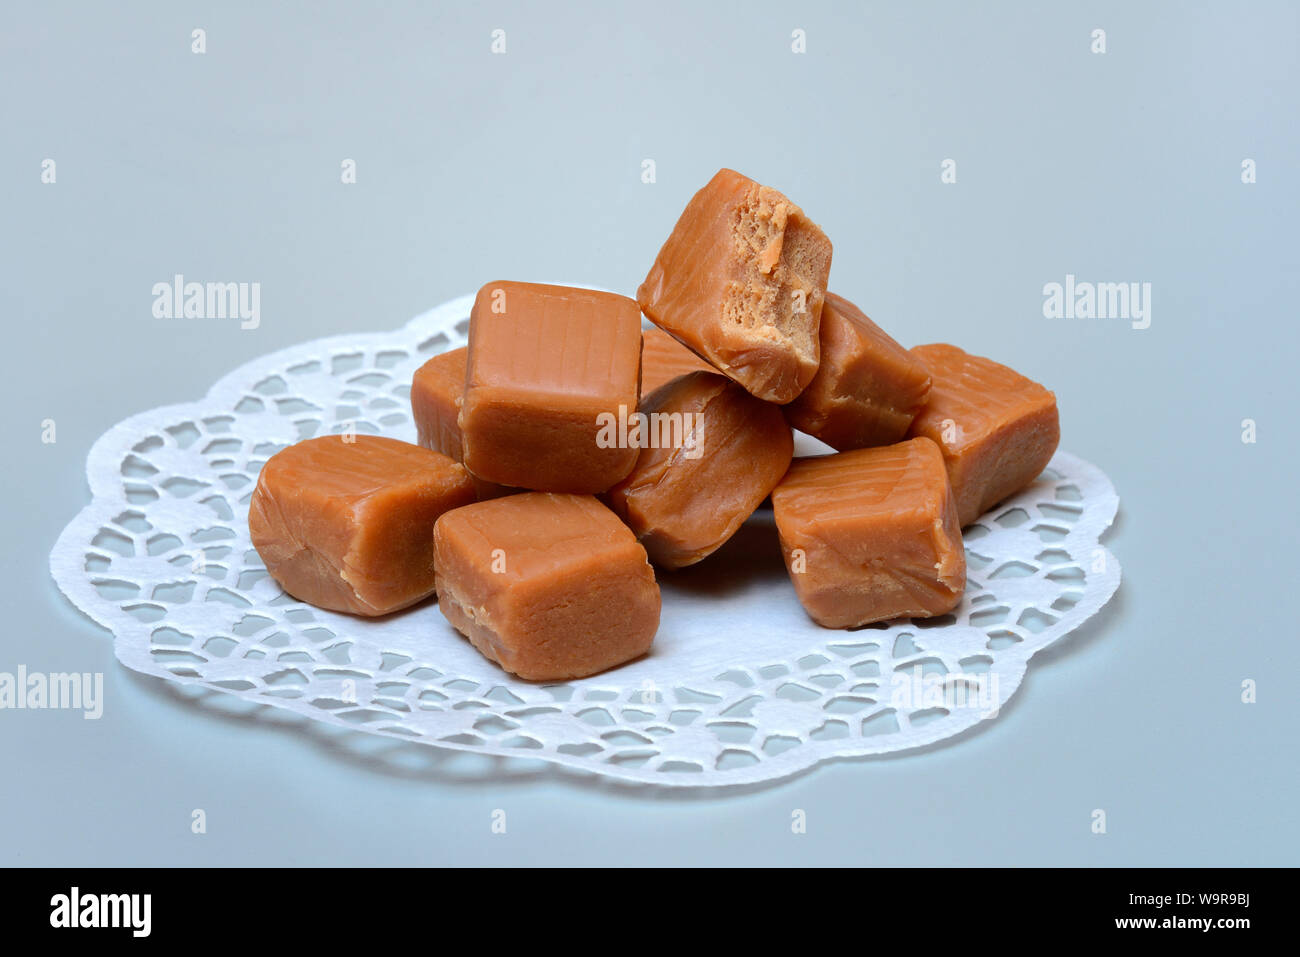 Englische Fudges, Fudge, Karamell-Konfekt, Weichkaramell, Bonbon, angebissen, Caramelbonbon, Caramel Stock Photo